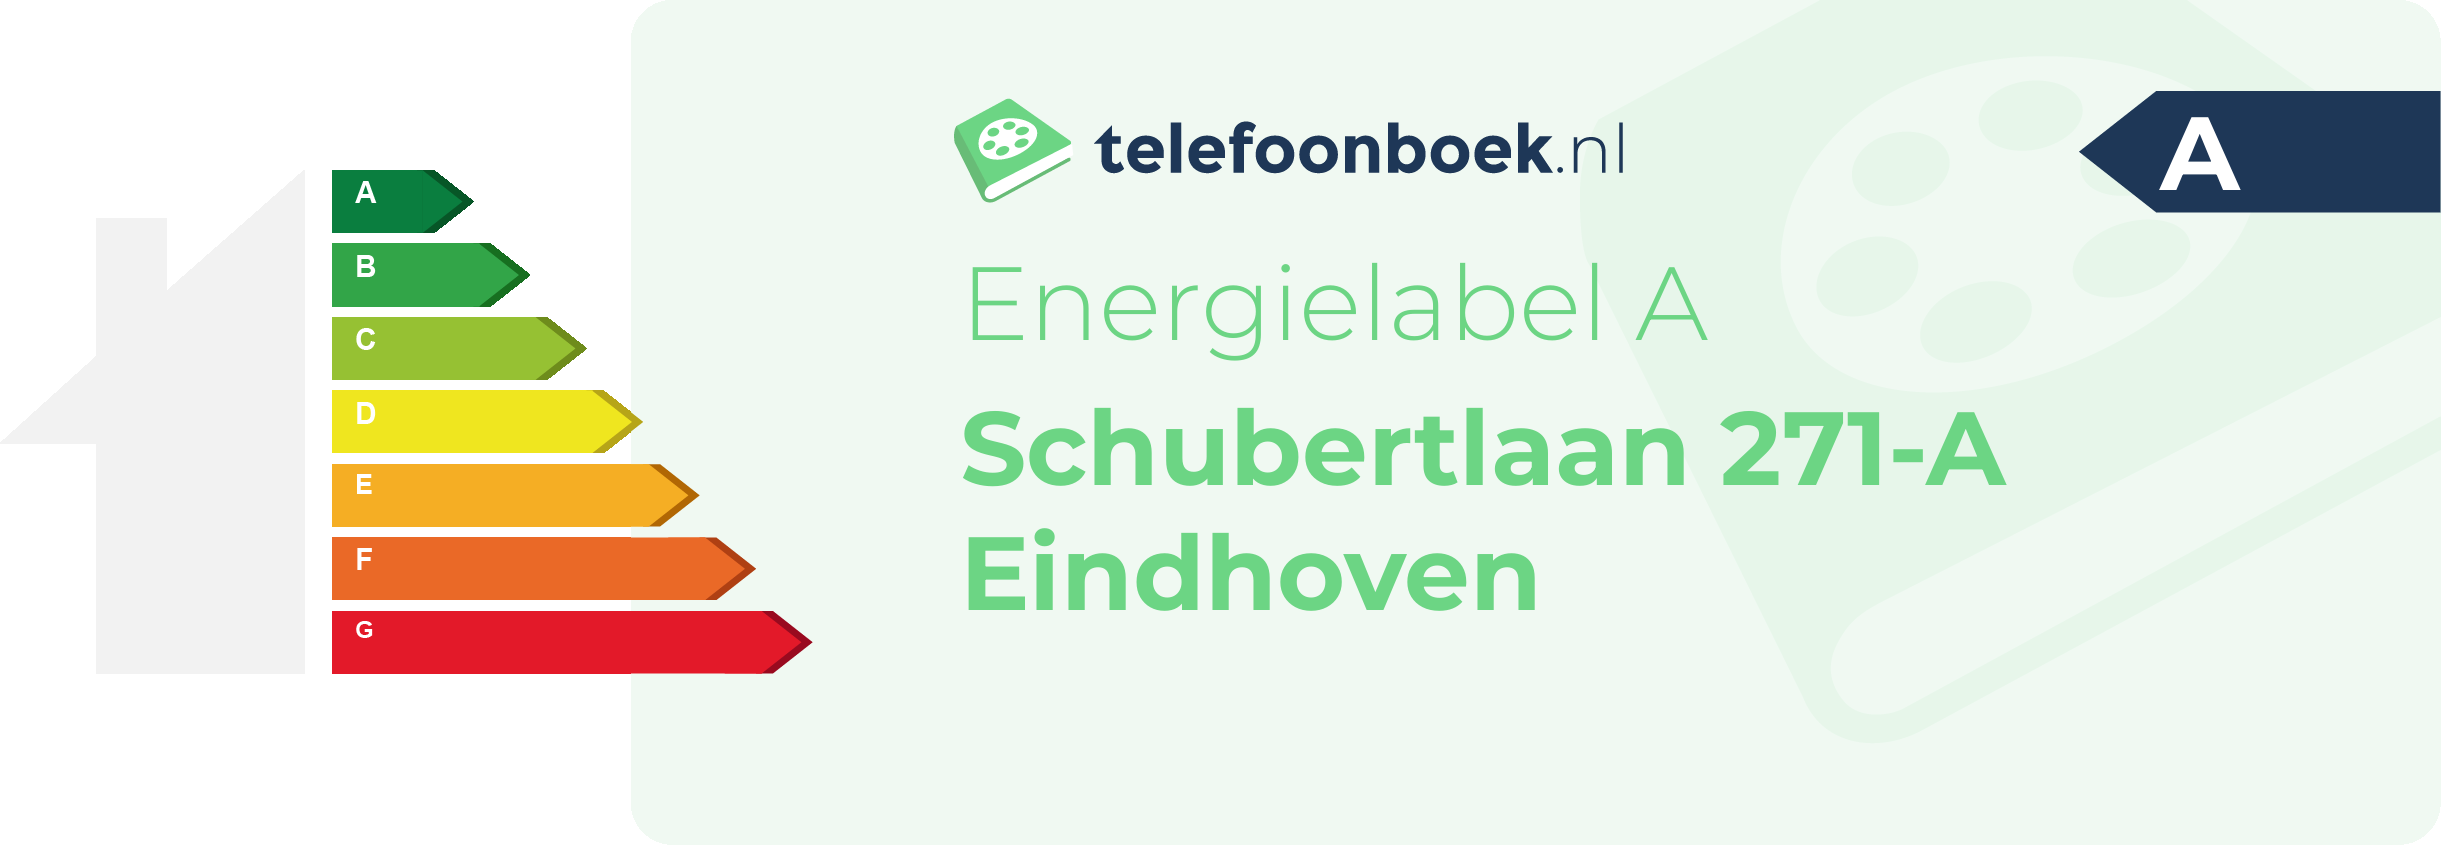 Energielabel Schubertlaan 271-A Eindhoven